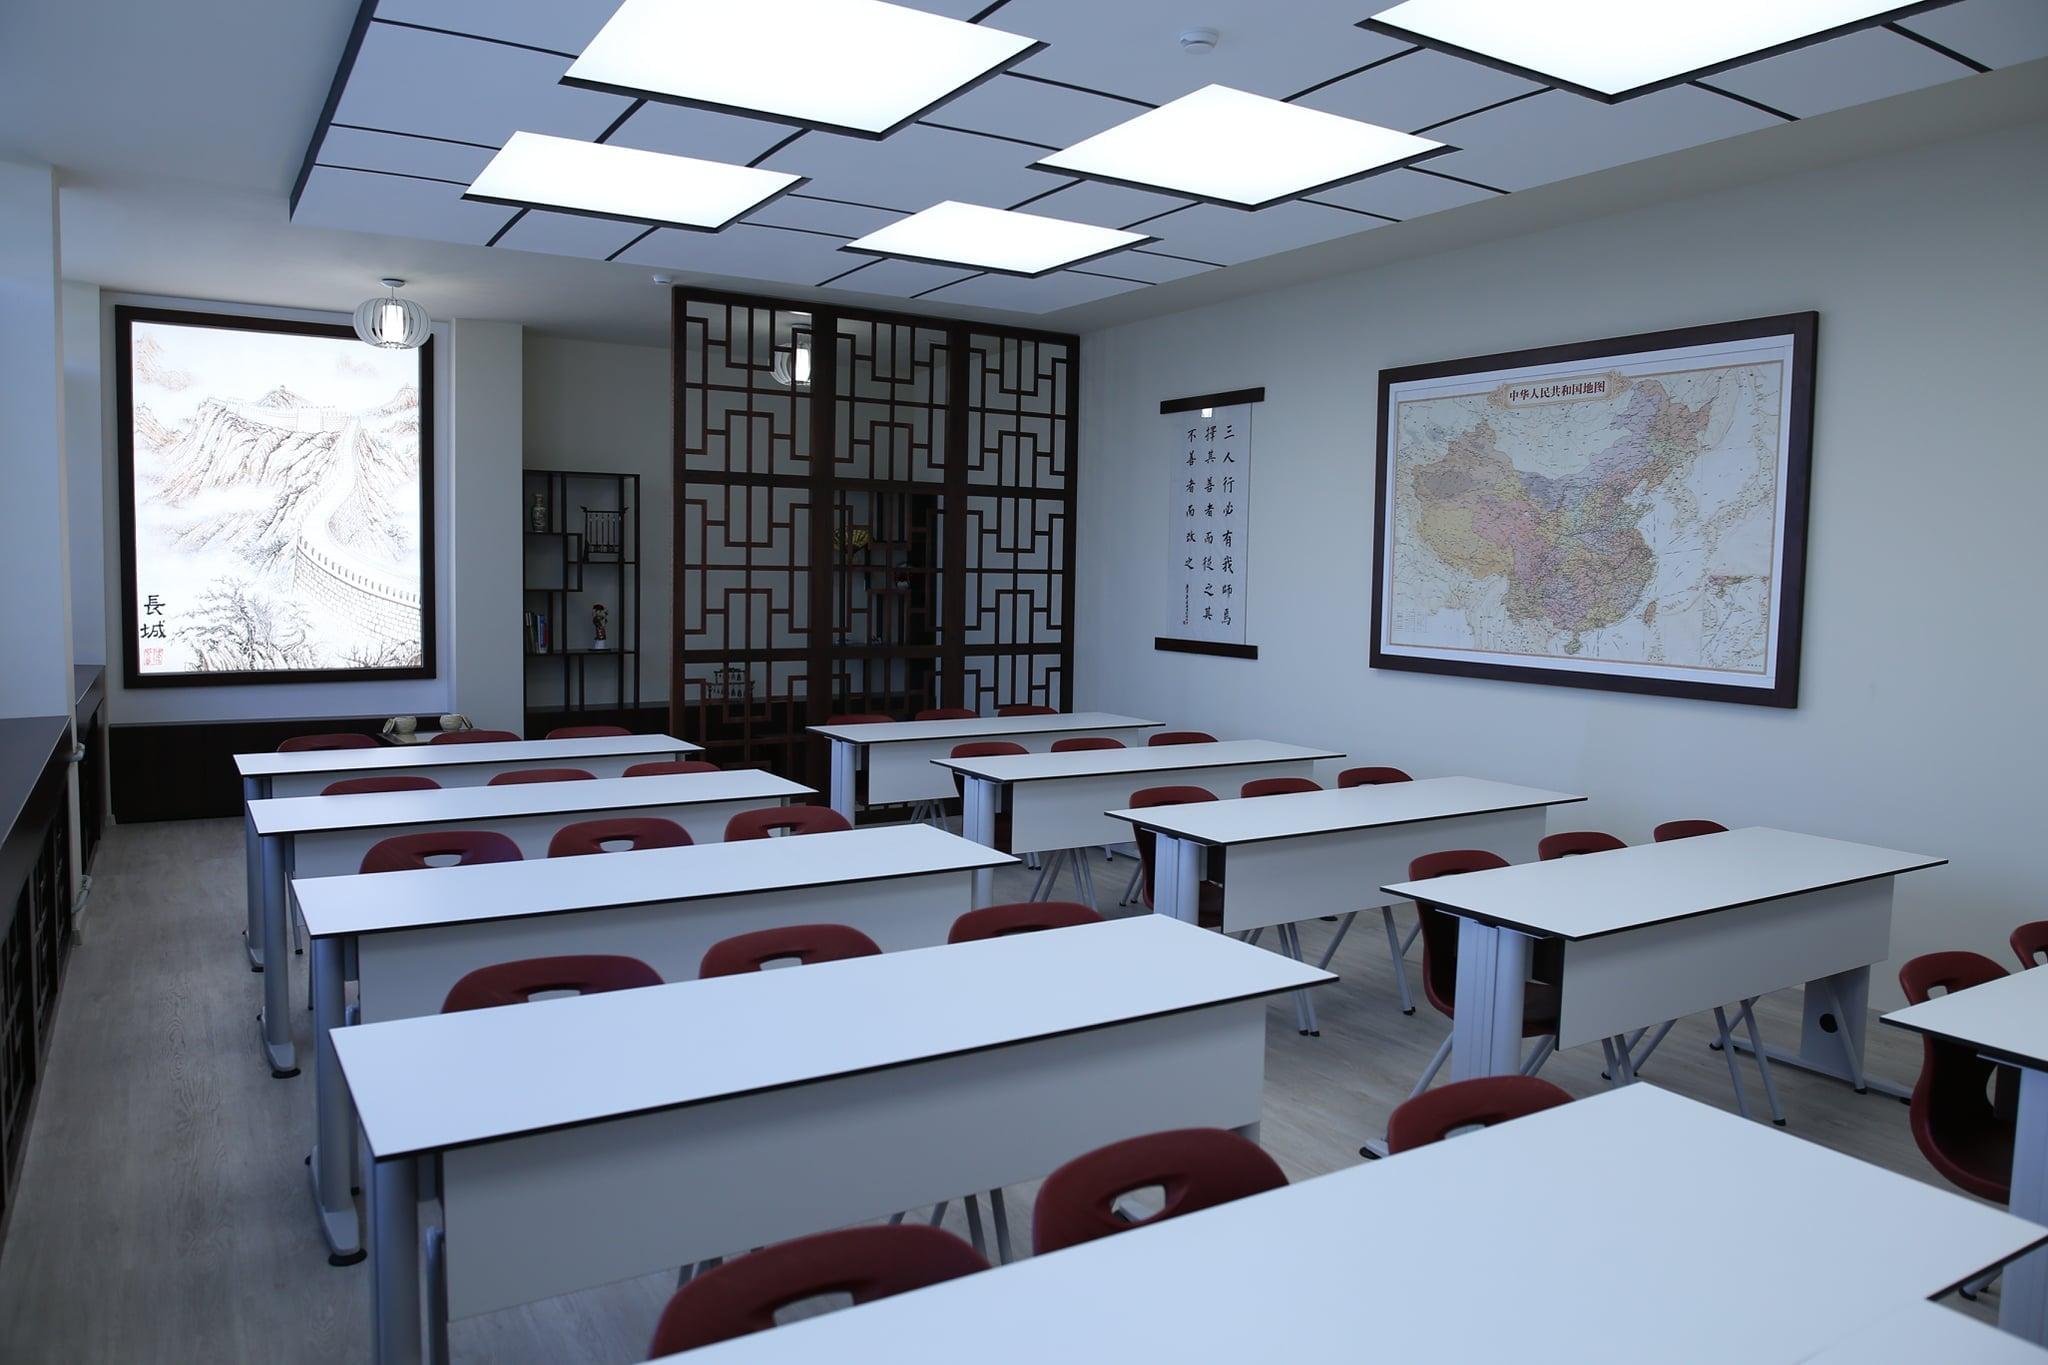 Децата от 101 СУ "Бачо Киро" вече разполагат с класна стая "Конфуций"